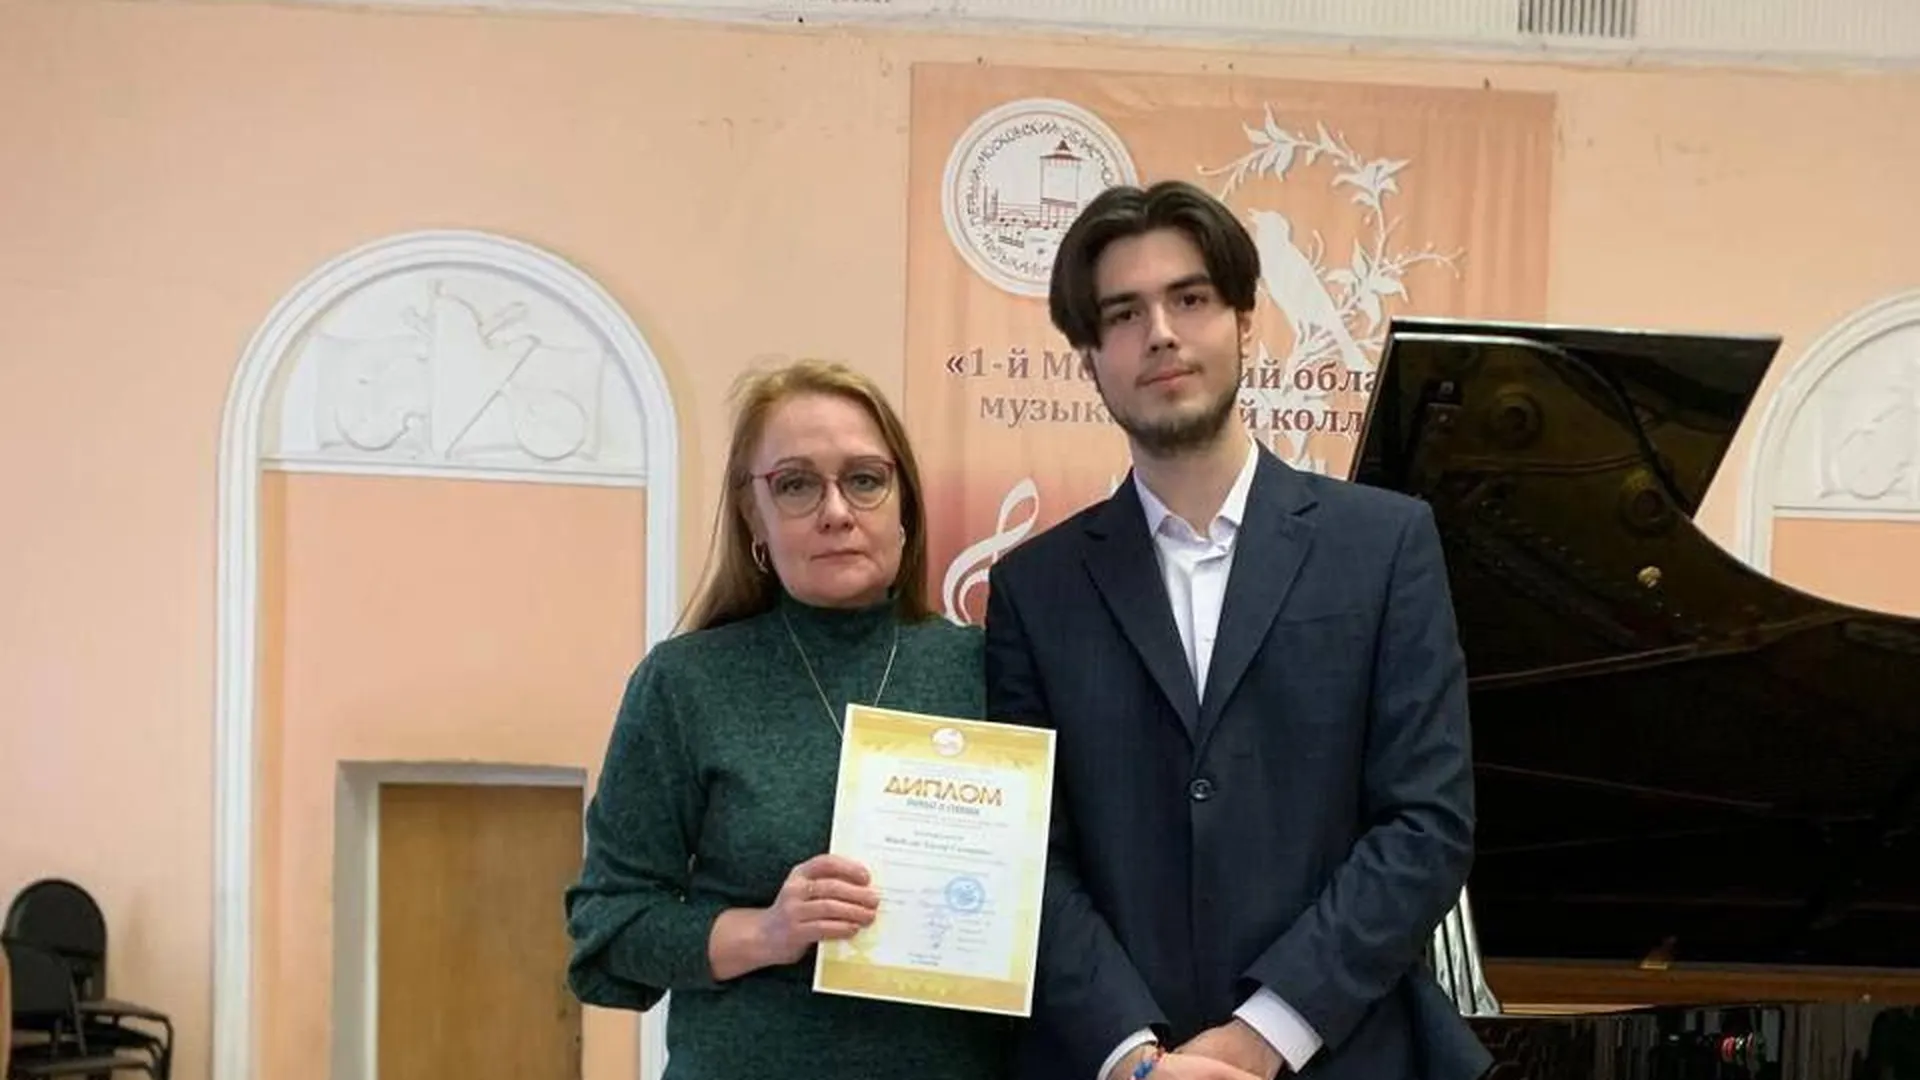 Пианист из подмосковной Каширы Эльдар Шахбузов стал лауреатом областного конкурса